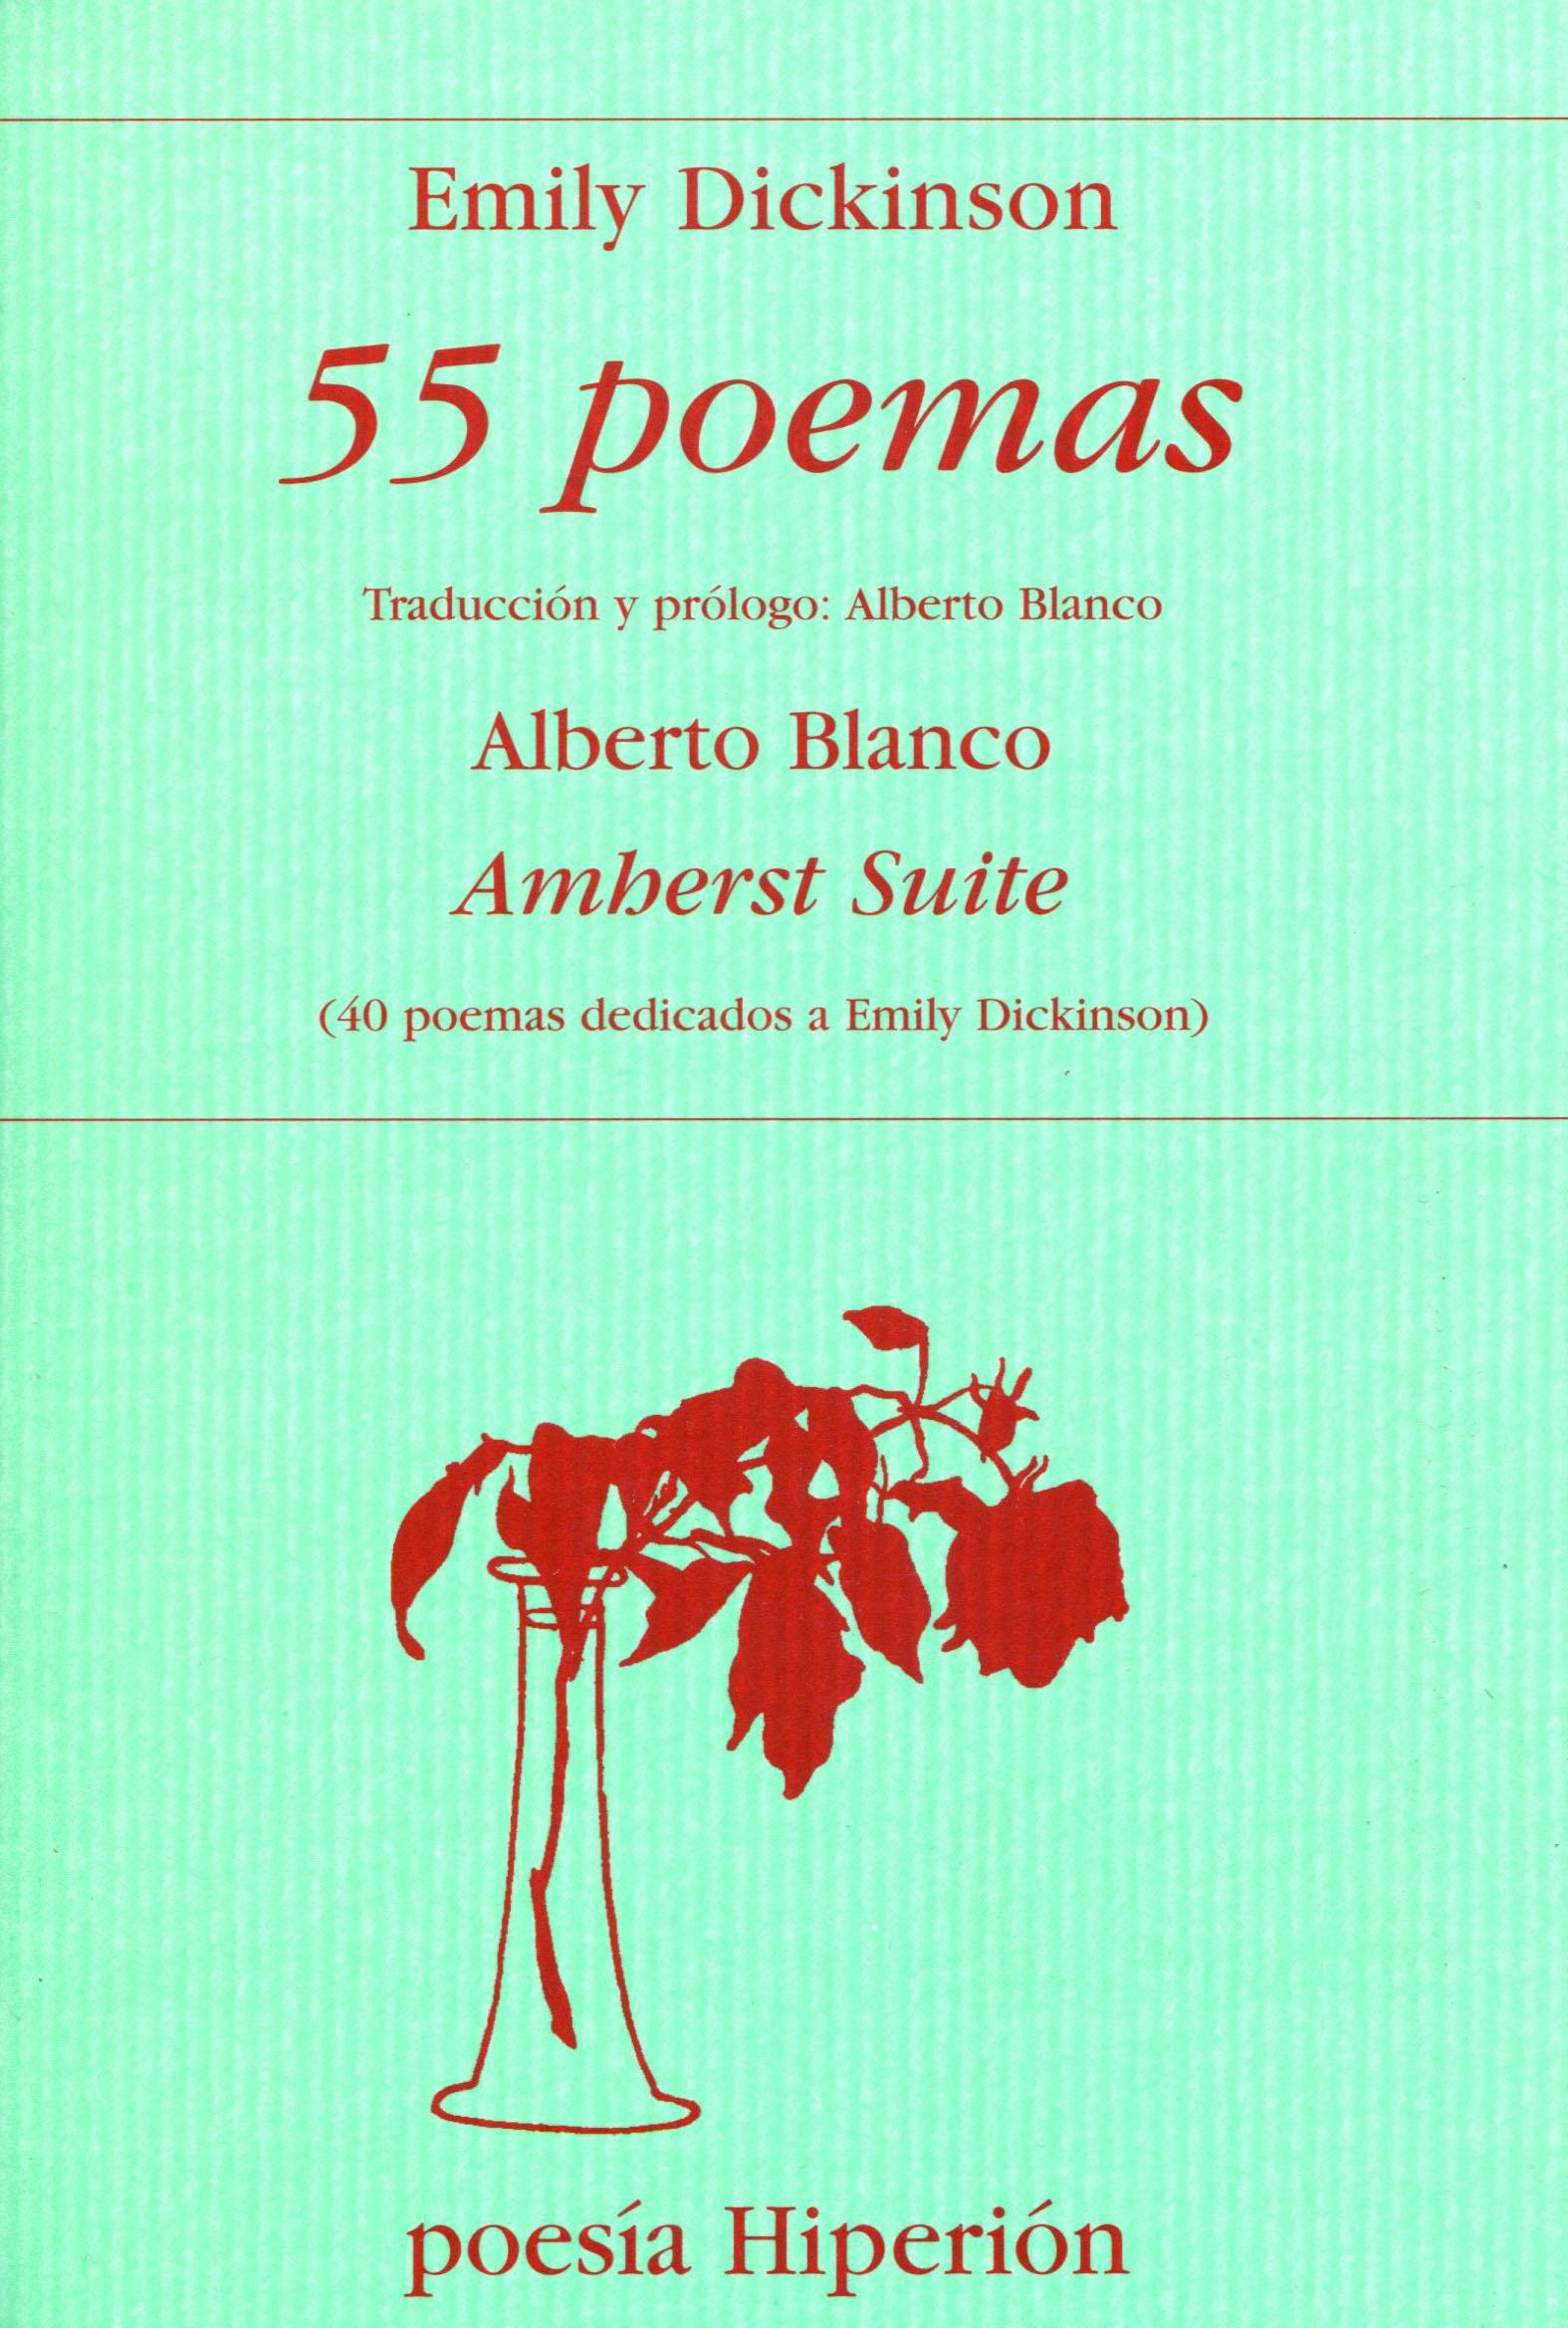 55 Poemas Seguido de Amherst Suite(40 Poemas Dedicados a Emily Dickinson) "Amherst Suite (40 Poemas Dedicados a Emily Dickinson)"